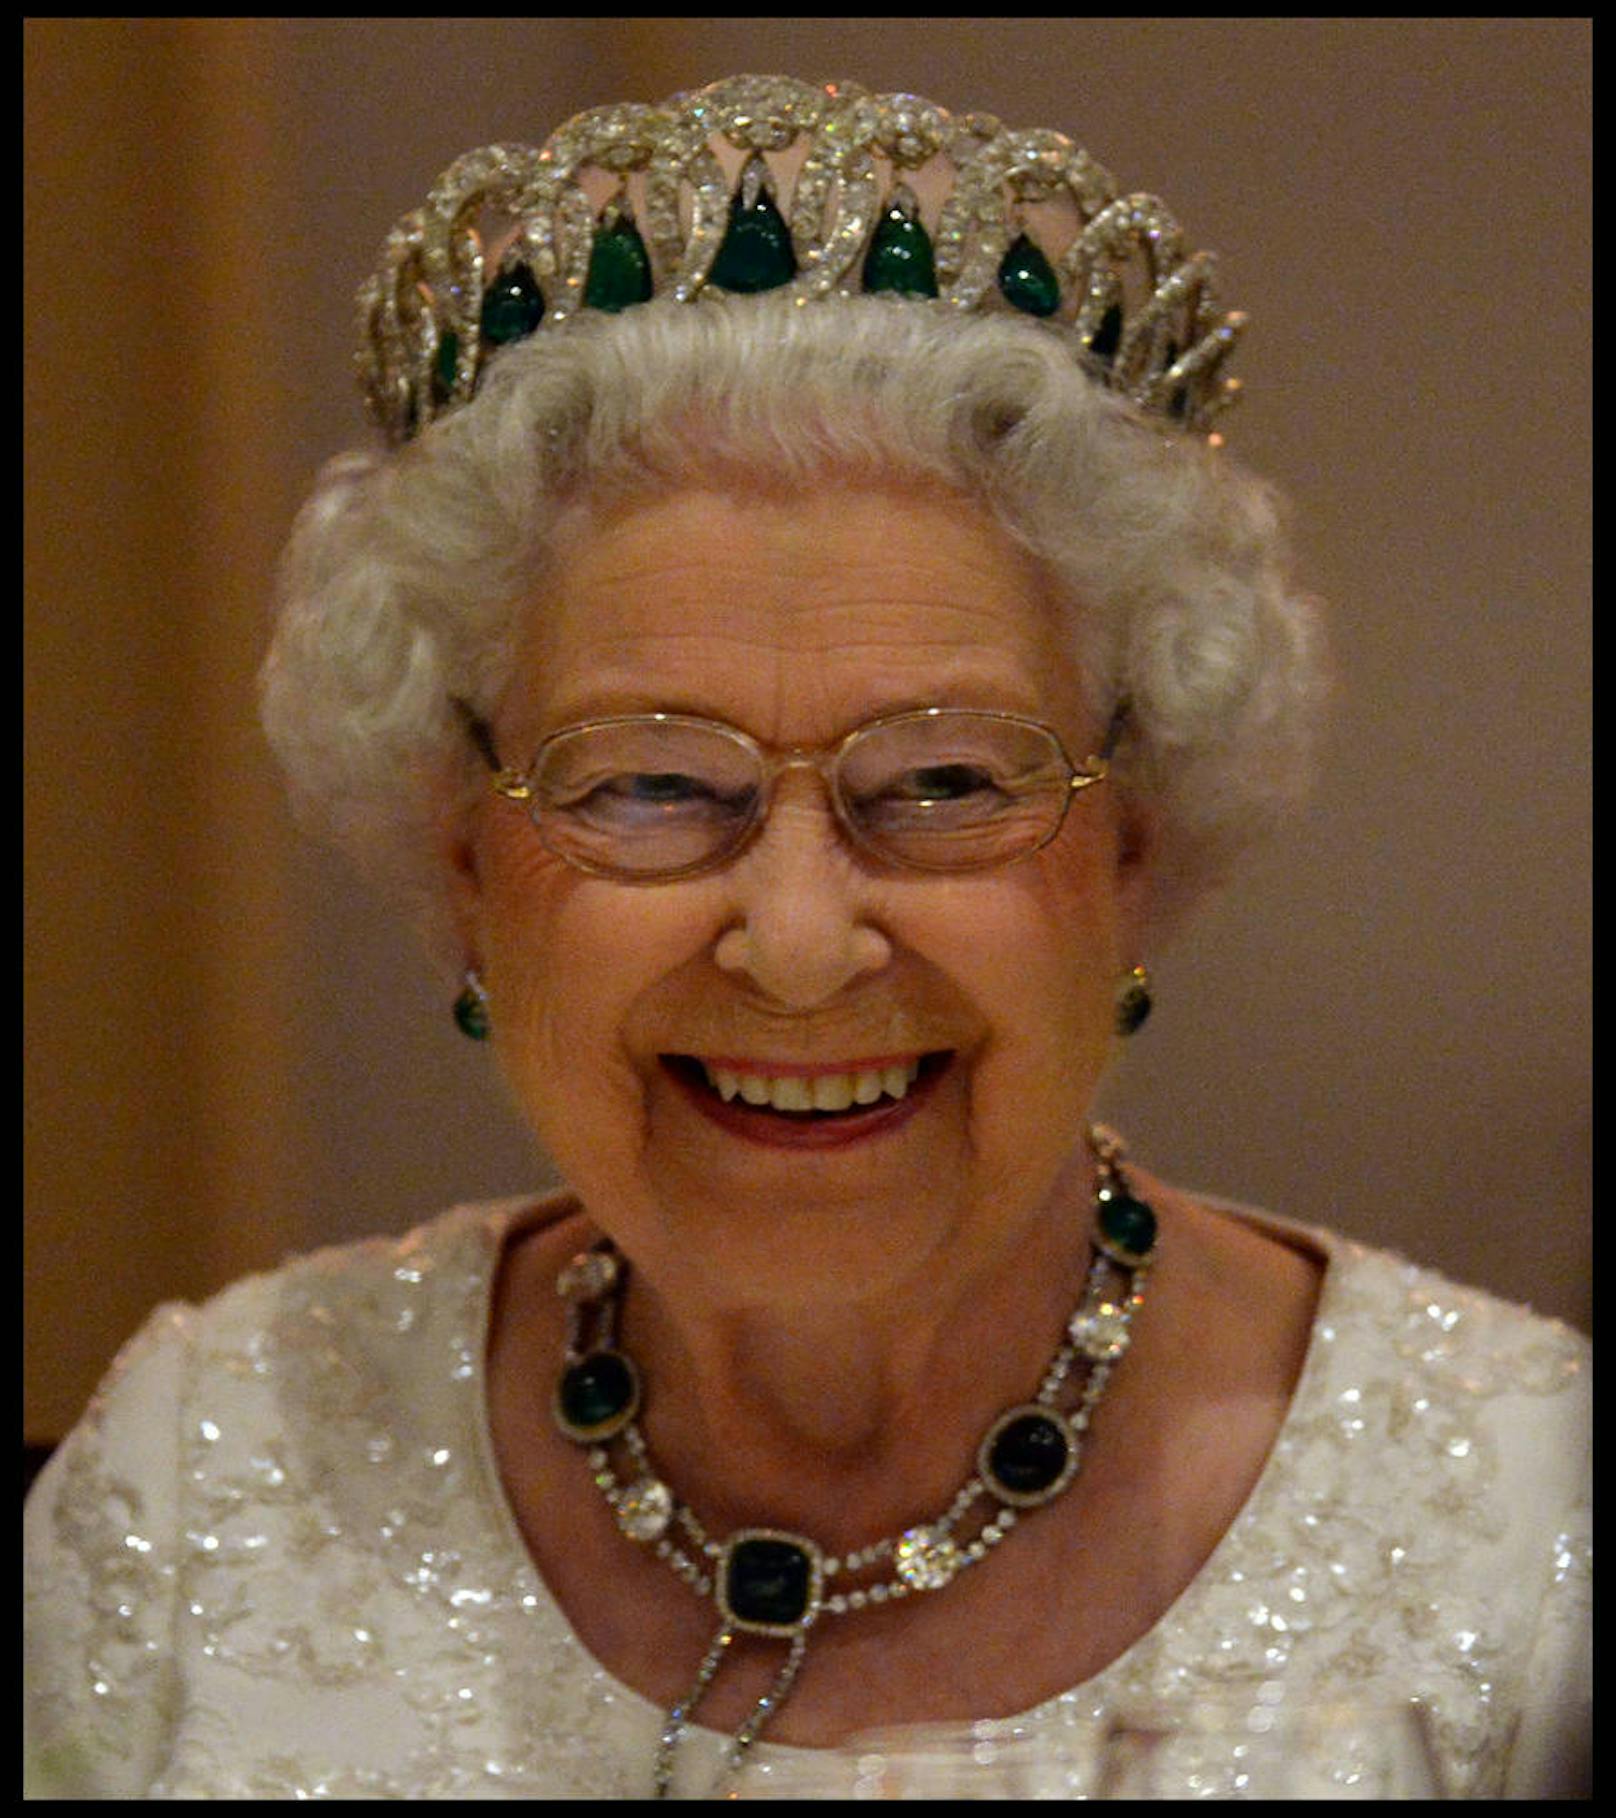 Elizabeth II. hat während ihrer Regentschaft 261 offizielle Auslandsbesuche in insgesamt 116 Länder absolviert, darunter 96 Staatsbesuche. Im Mai 1969 besuchte sie Österreich - zum ersten und bisher einzigen Mal -, nachdem sie 1966 Bundespräsident Franz Jonas in London empfangen hatte.

Foto: 
27.11.2015: Die Queen auf Staatsbesuch in Malta